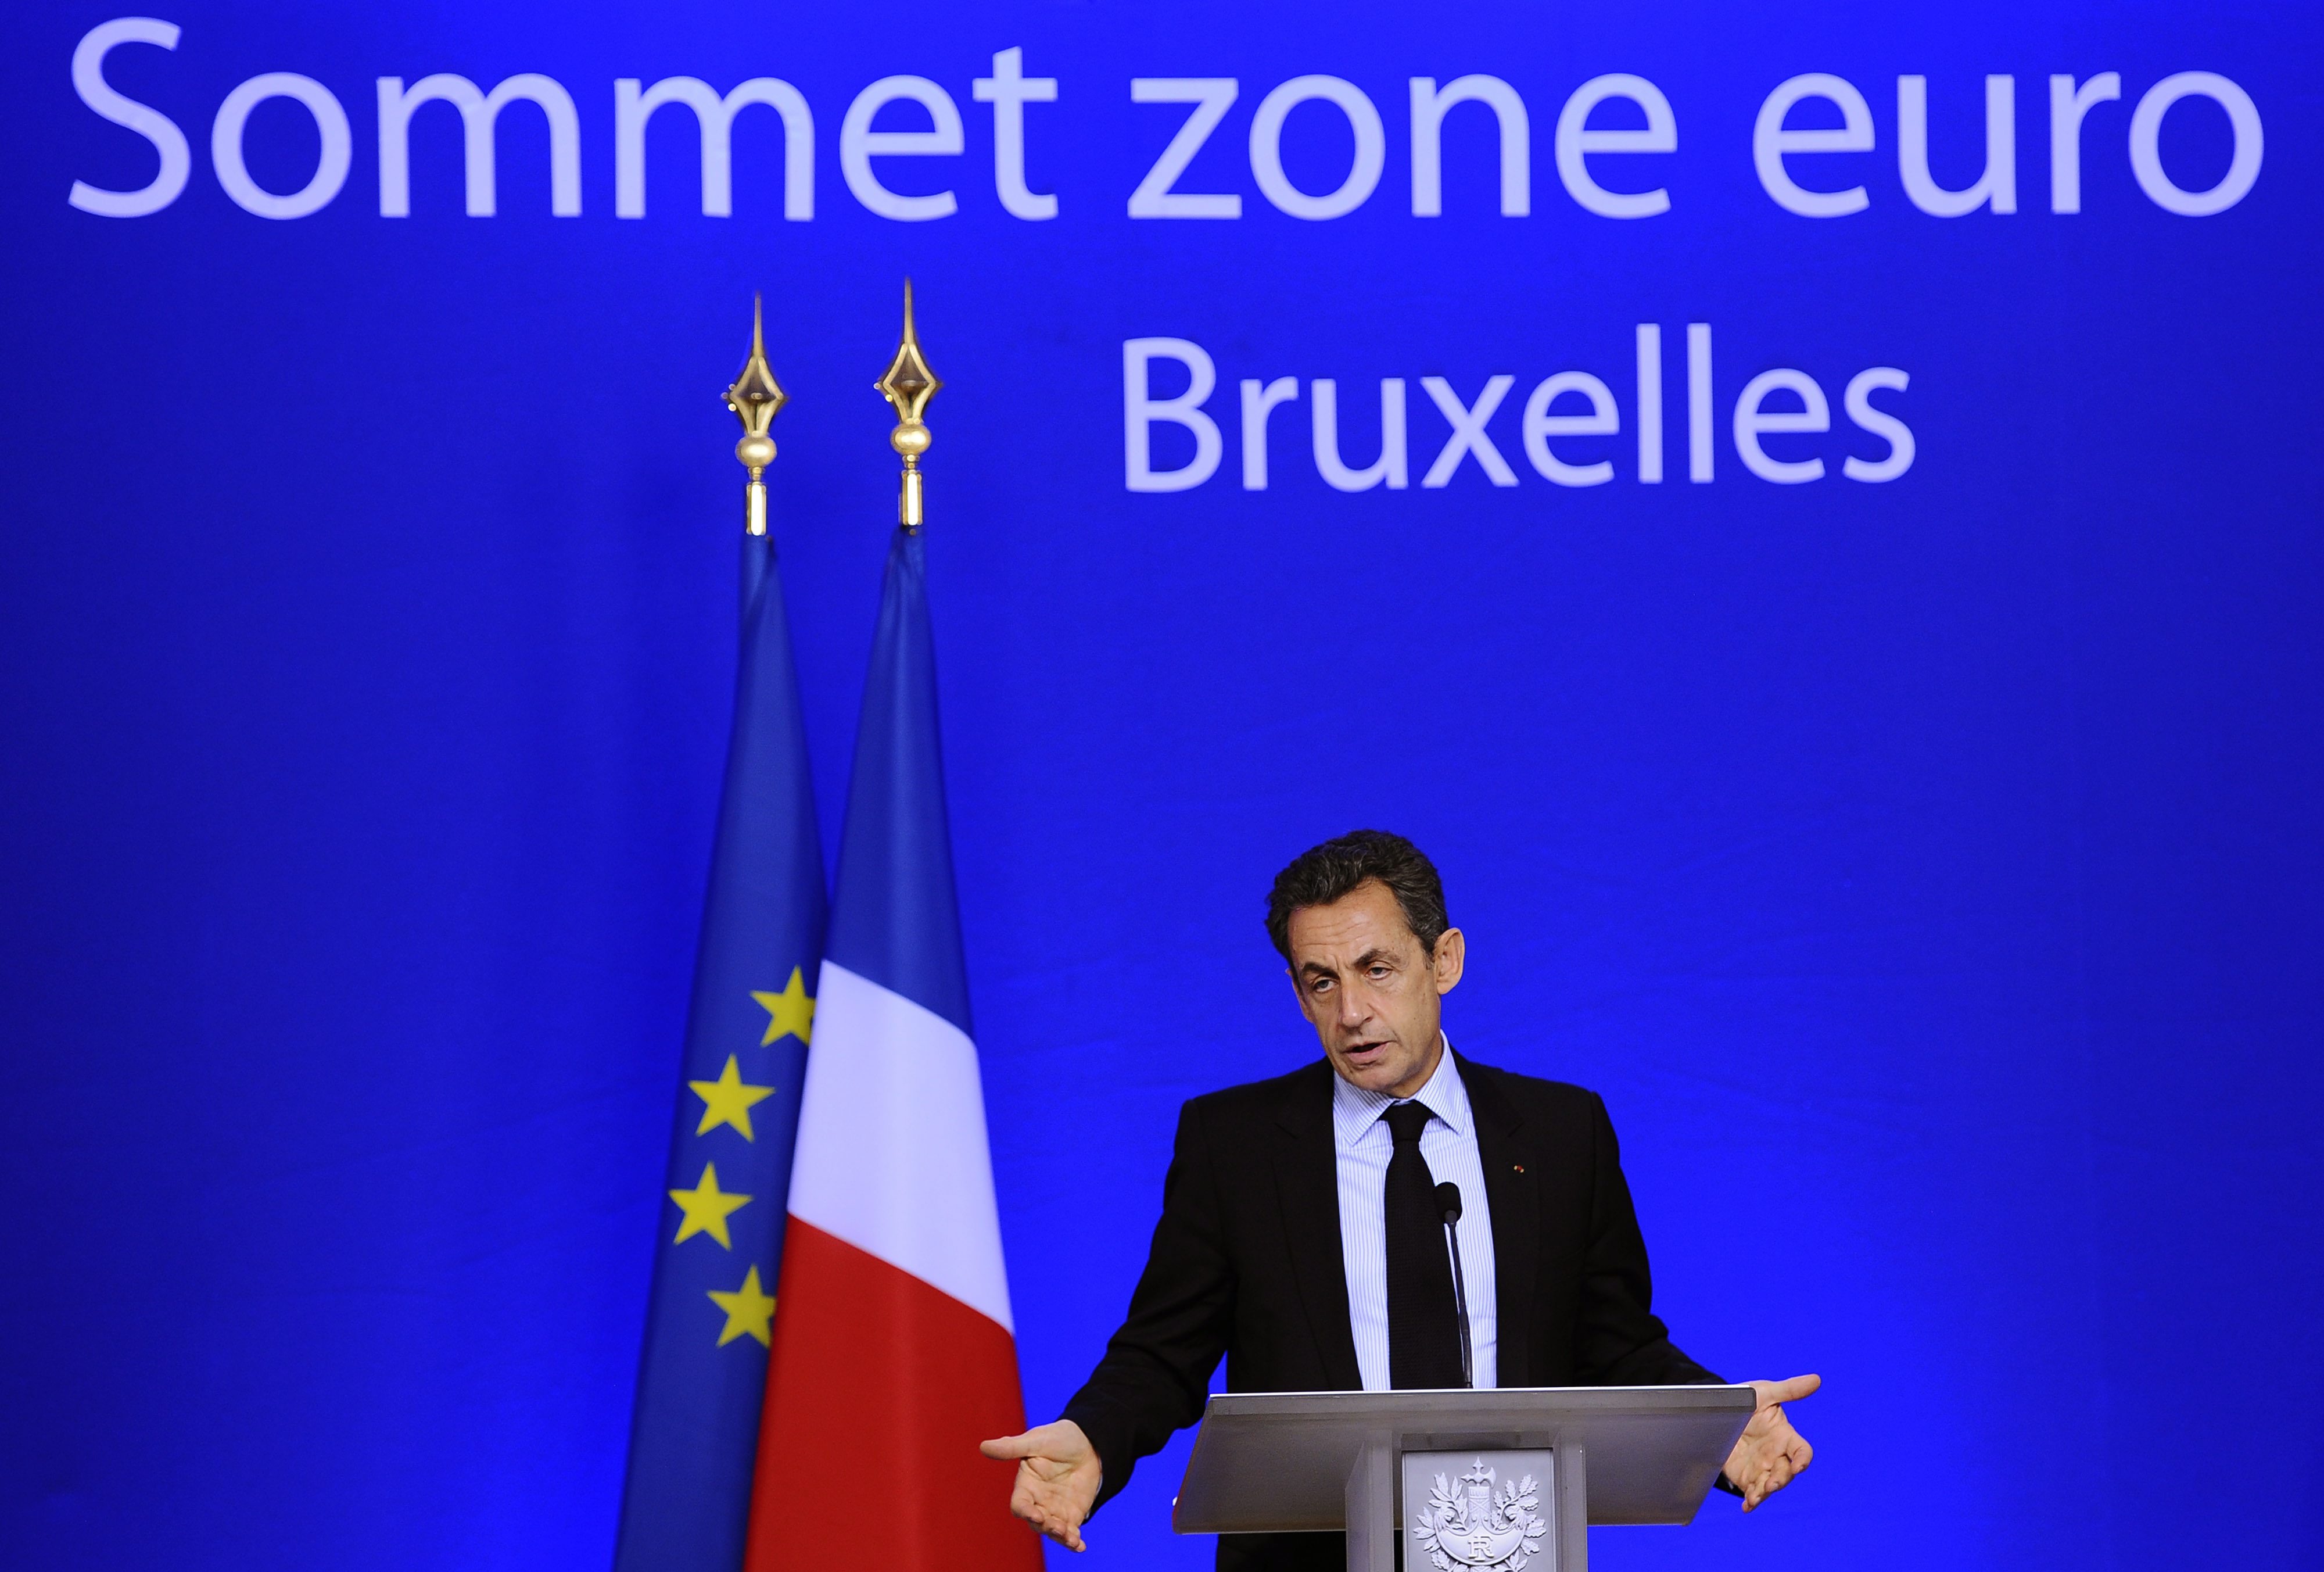 Френският президент Никола Саркози обявява сделката